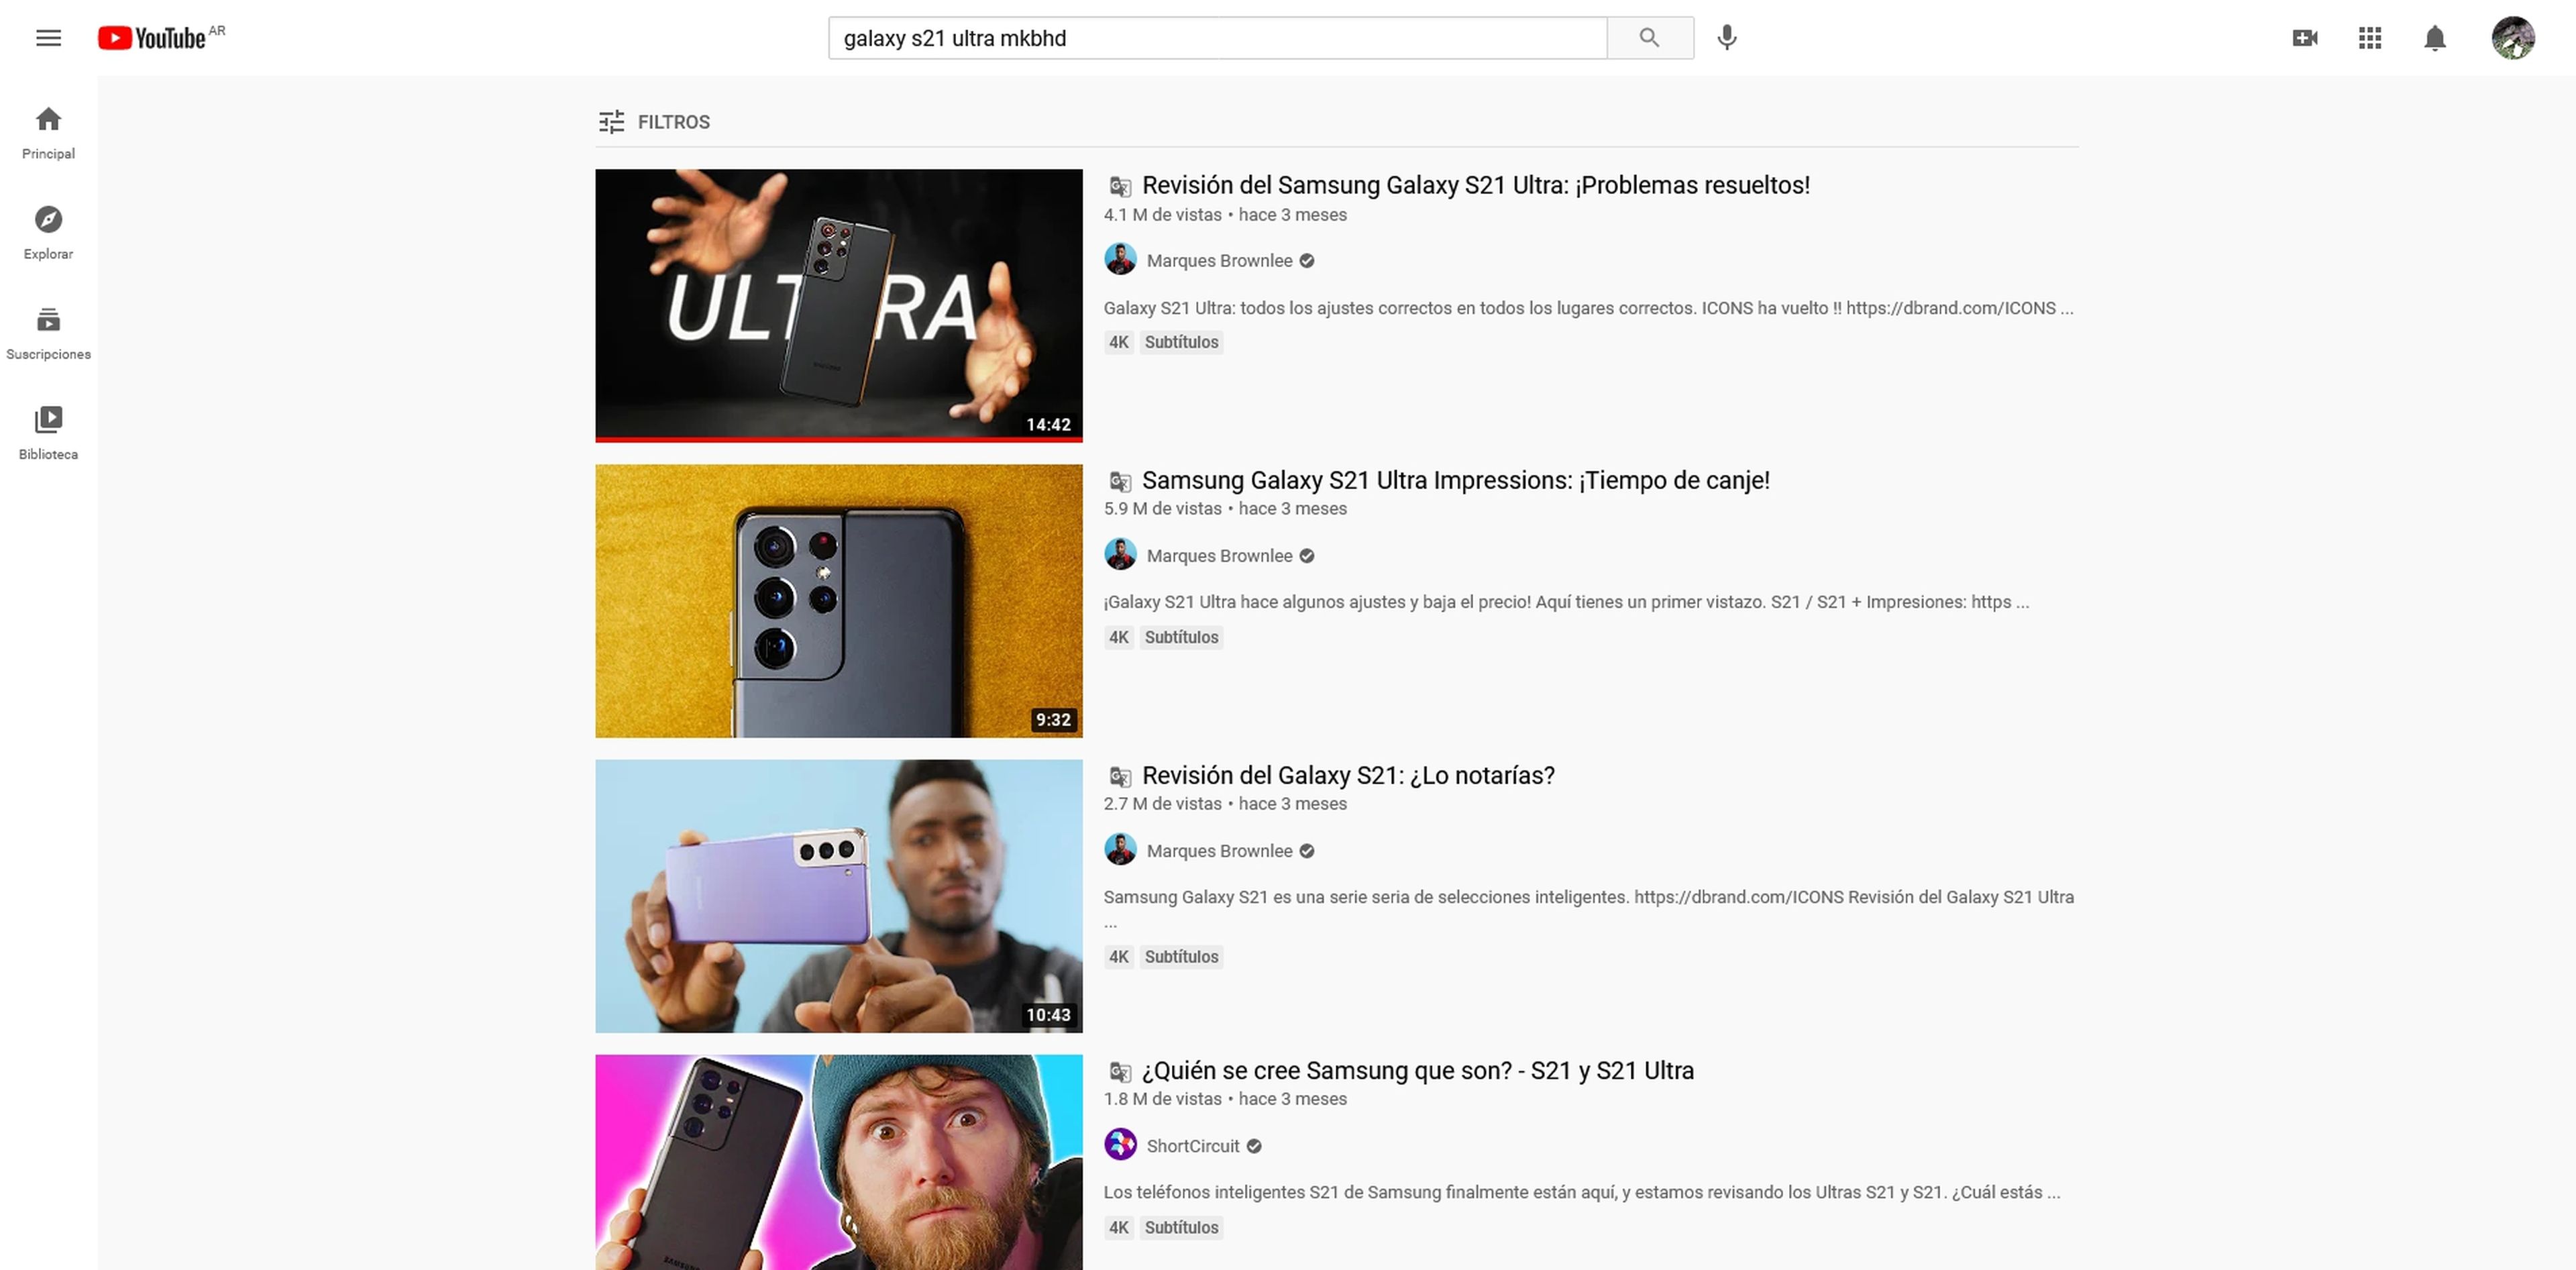 YouTube está probando una herramienta capaz de traducir los títulos y descripciones de los vídeos de manera automática